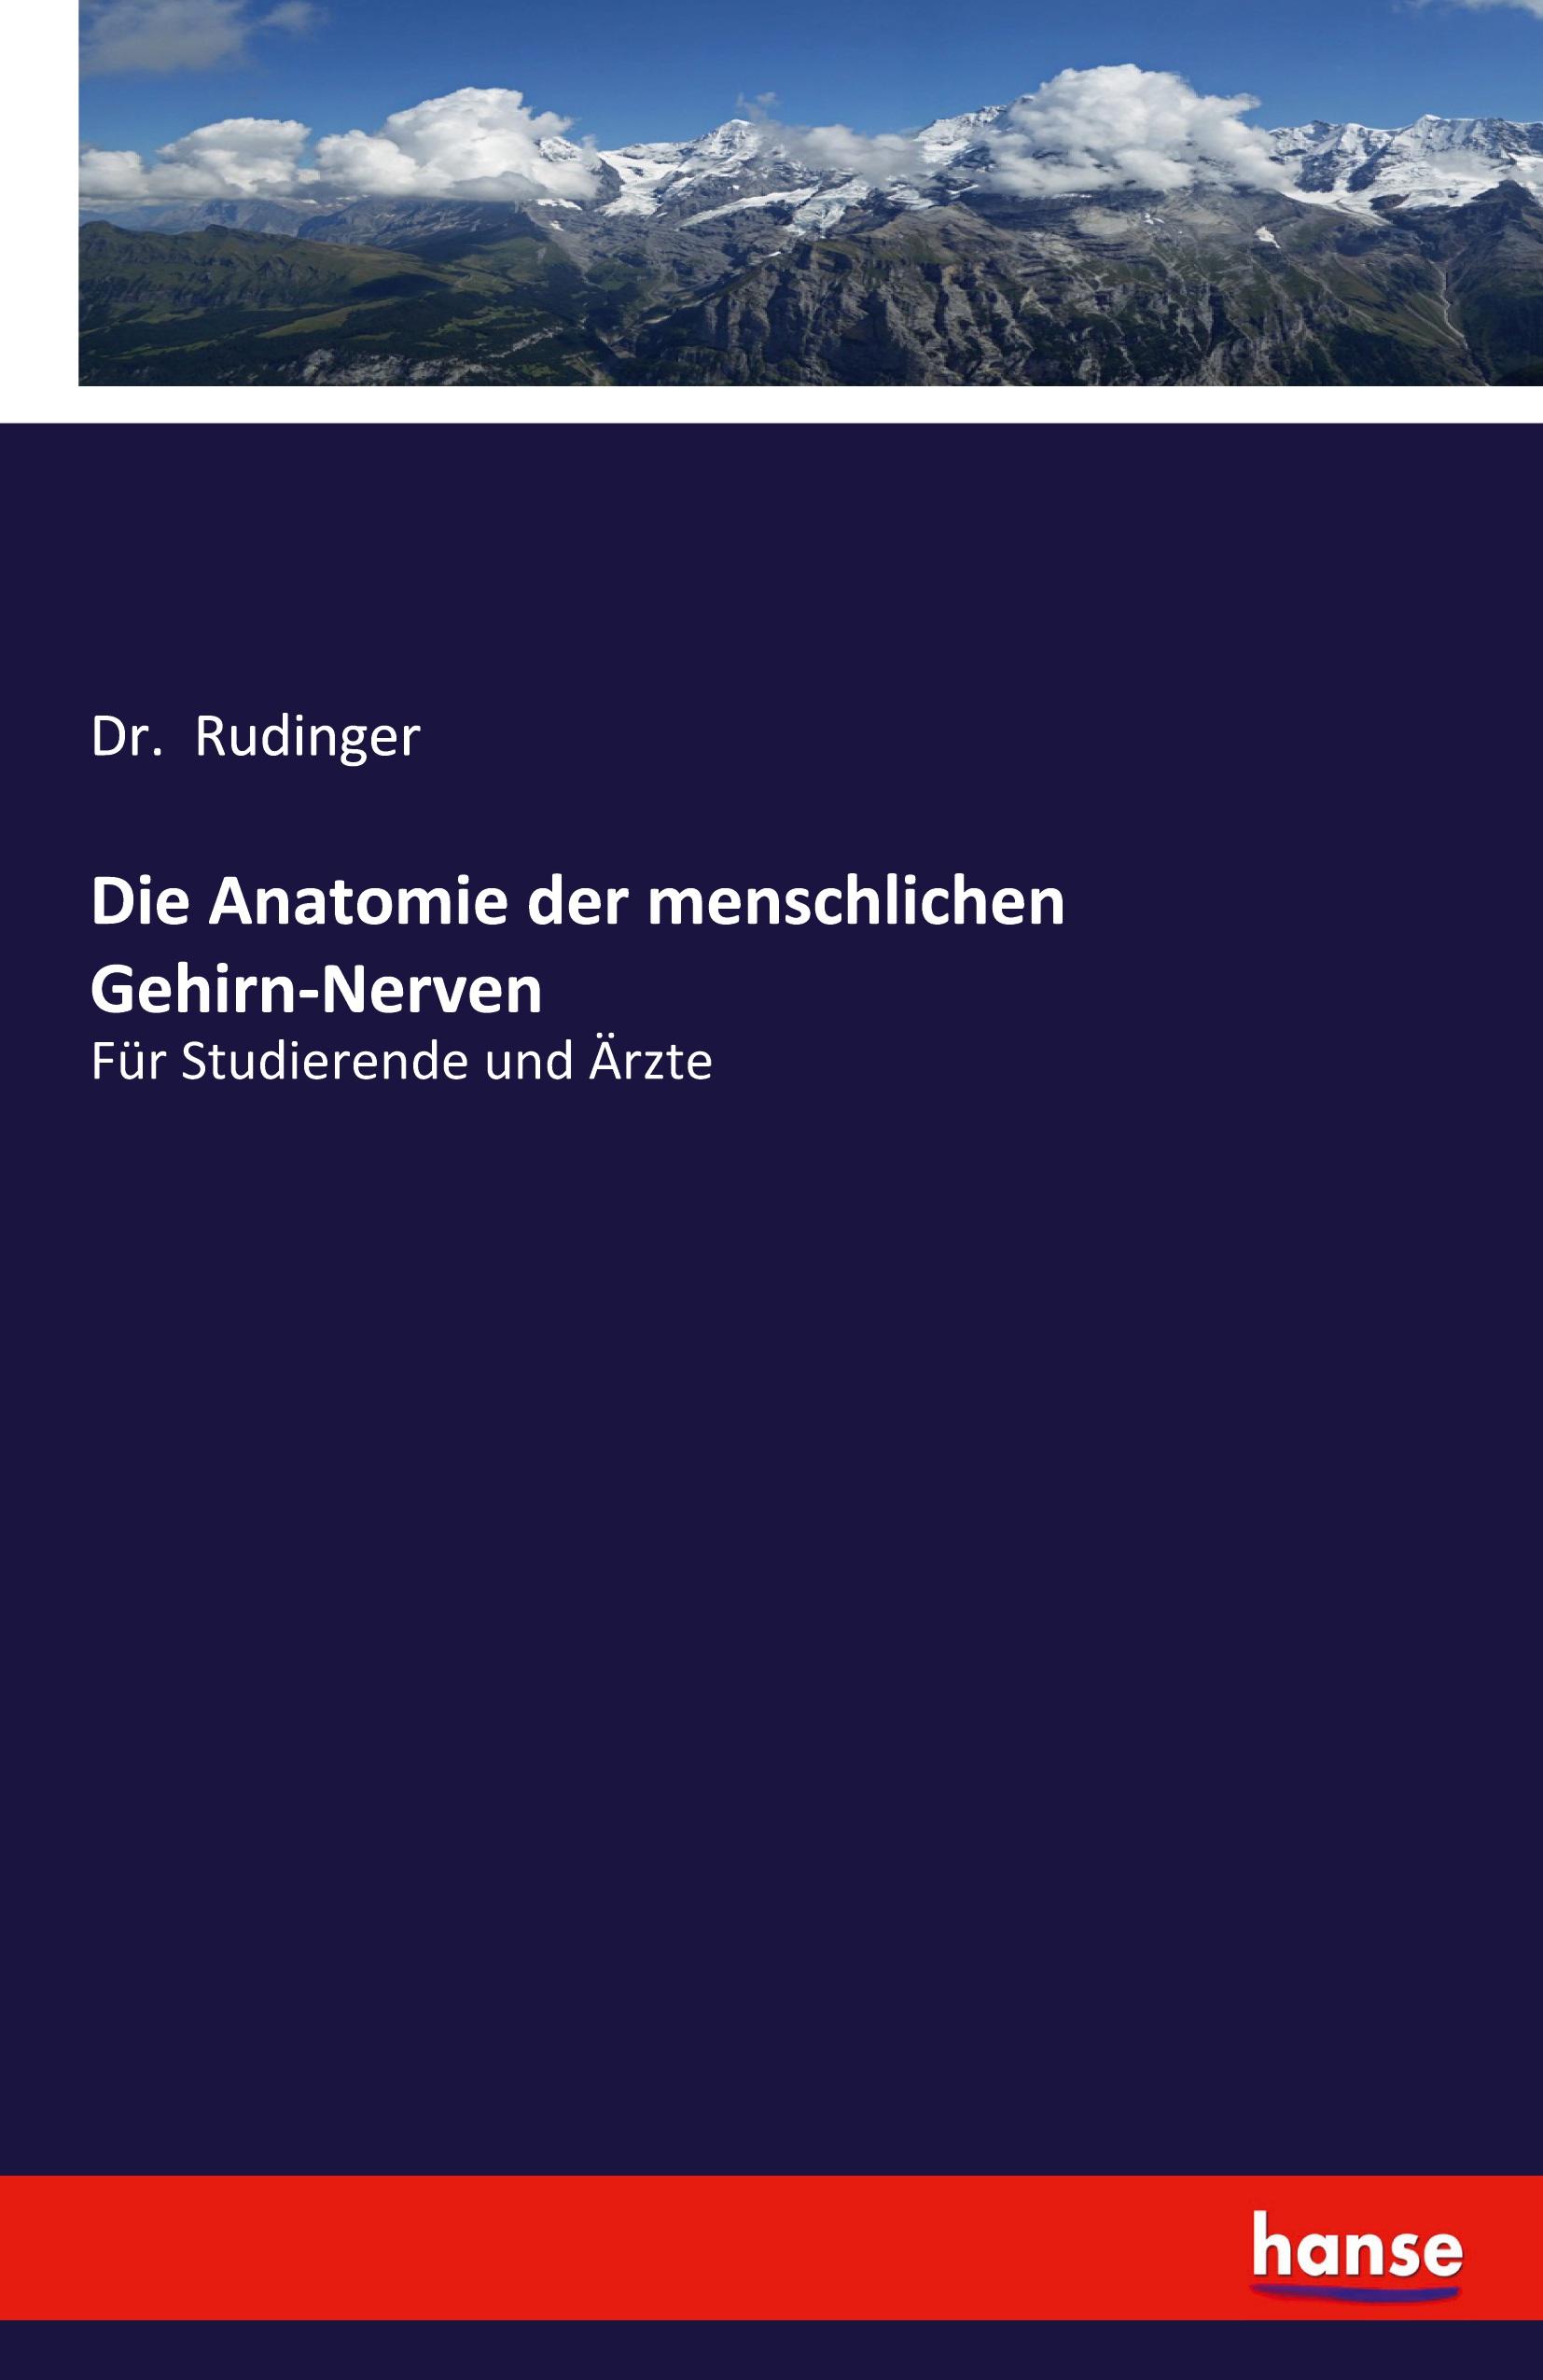 Die Anatomie der menschlichen Gehirn-Nerven / Für Studierende und Ärzte / Rudinger / Taschenbuch / Paperback / 132 S. / Deutsch / 2020 / hansebooks / EAN 9783337990213 - Rudinger